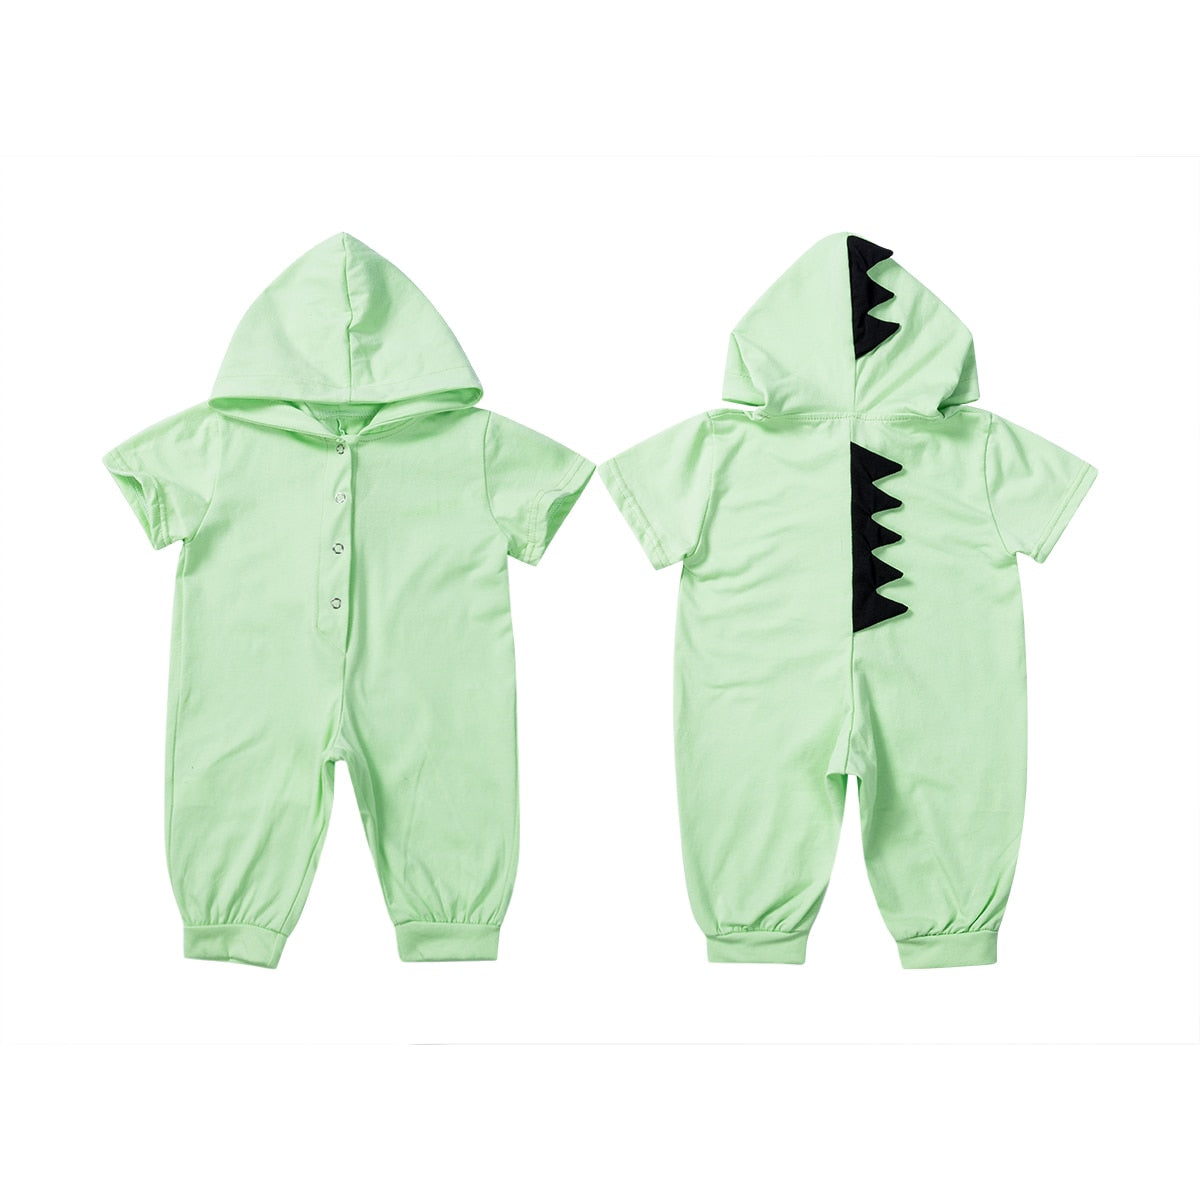 Citgeett Summer 6 Colors Dinosaur Romper Newborn Infant Baby Boys Girls Jumpsuit Cute Zipper Summer Clothes Hooded Outfits